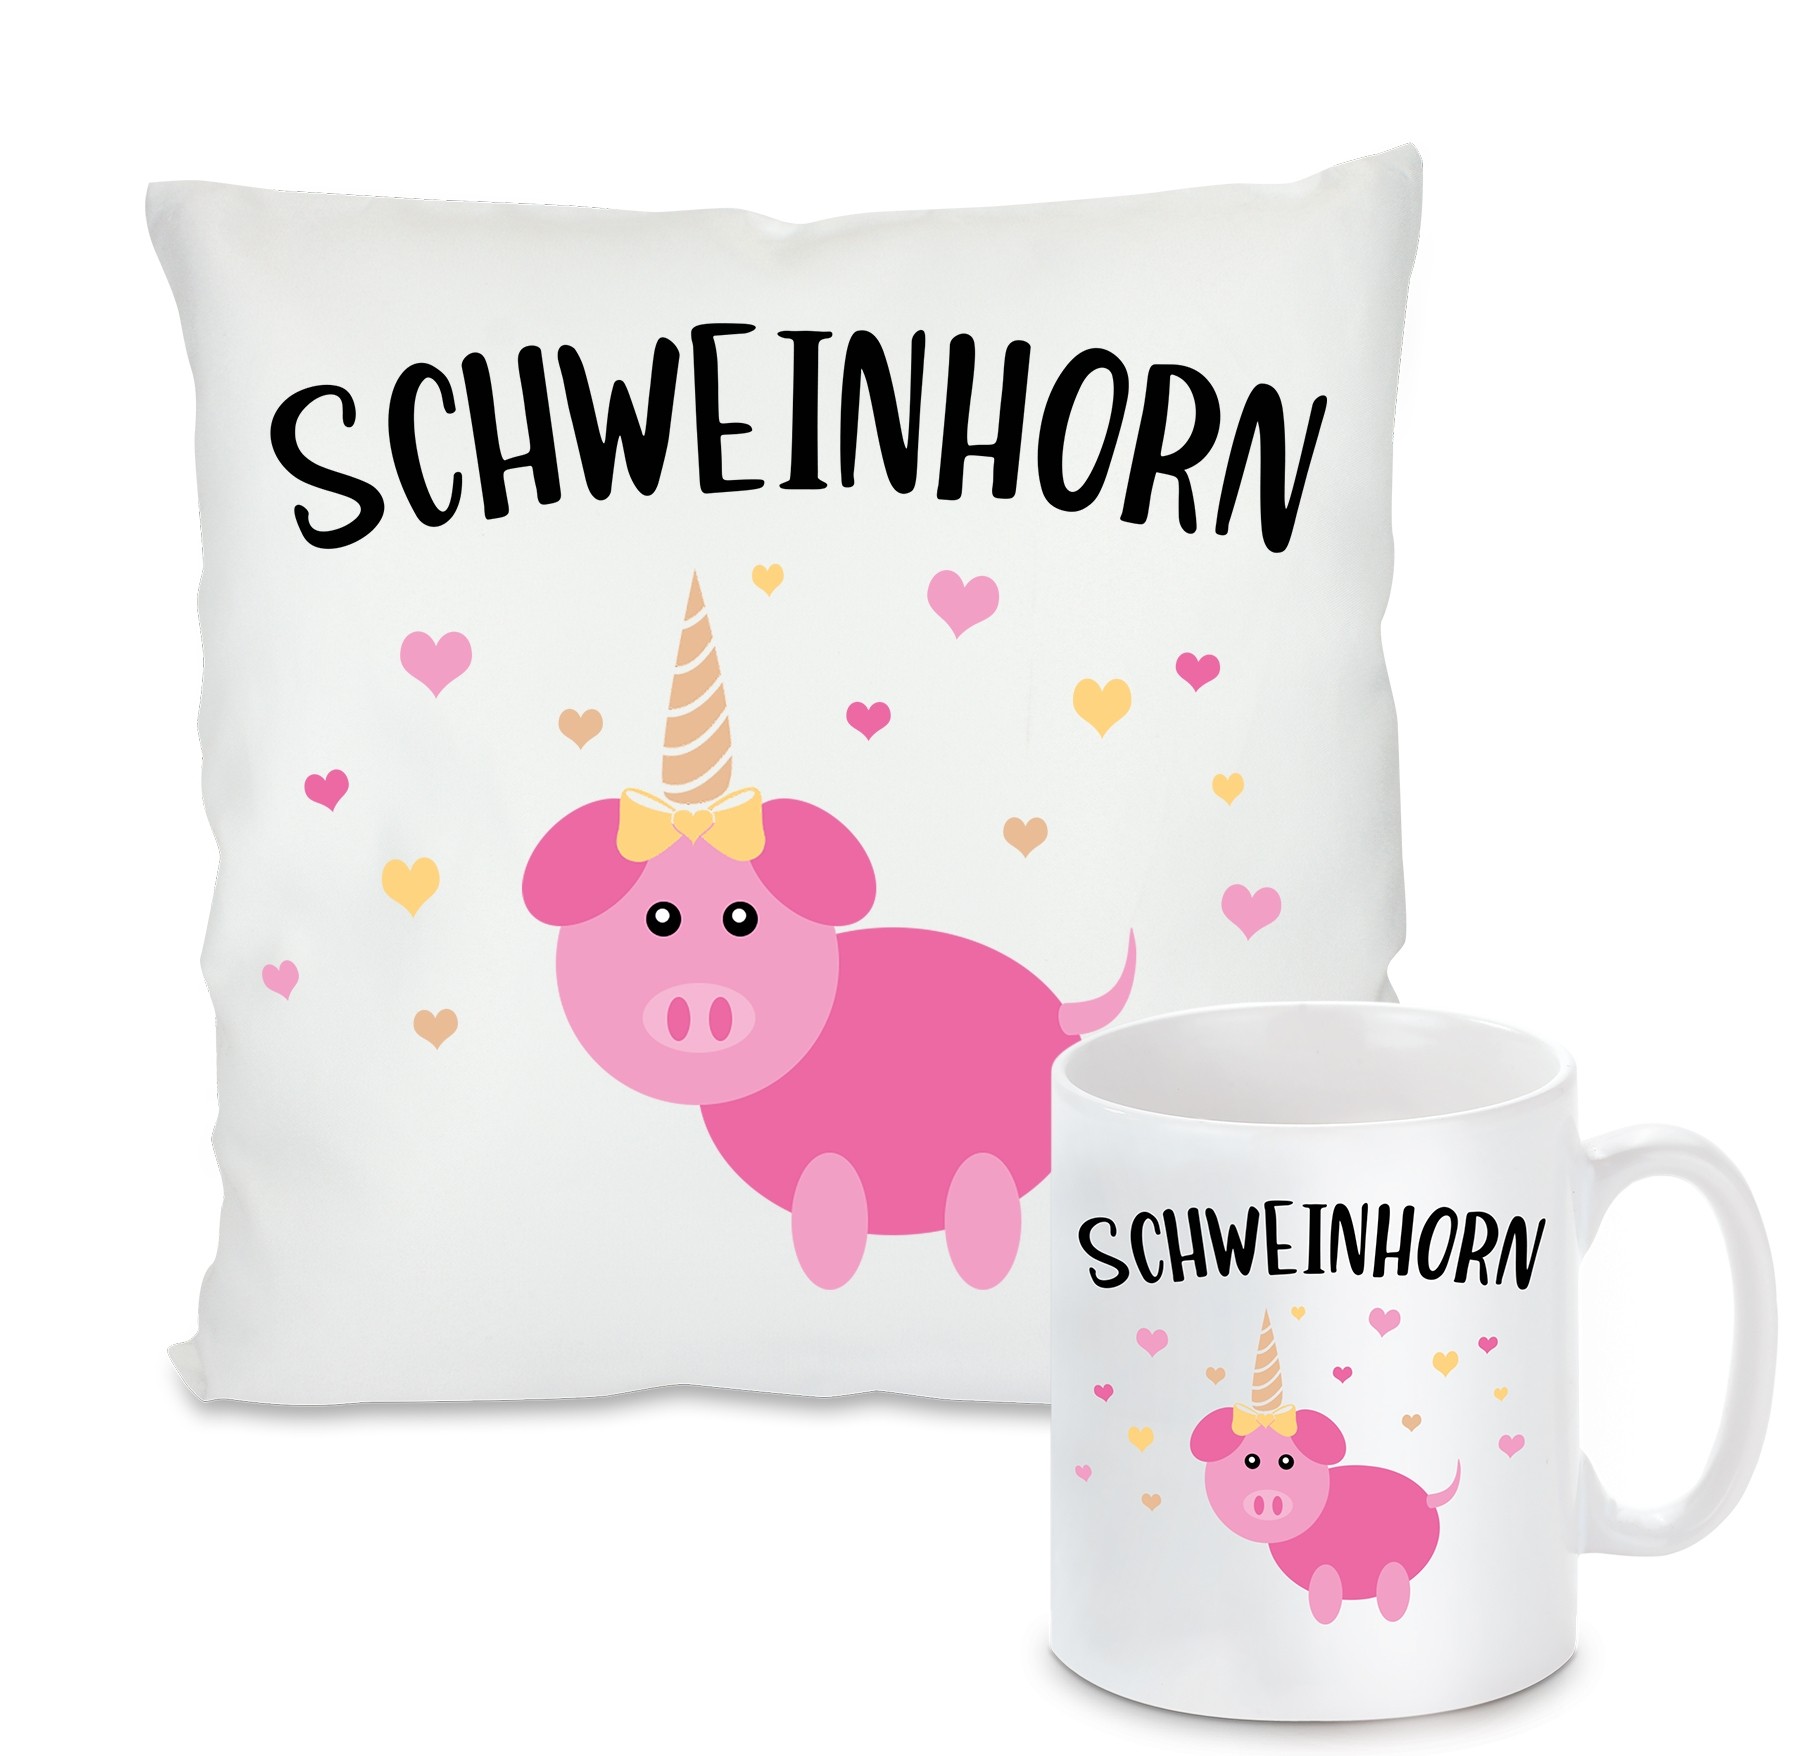 Kissen oder Tasse: Schweinhorn